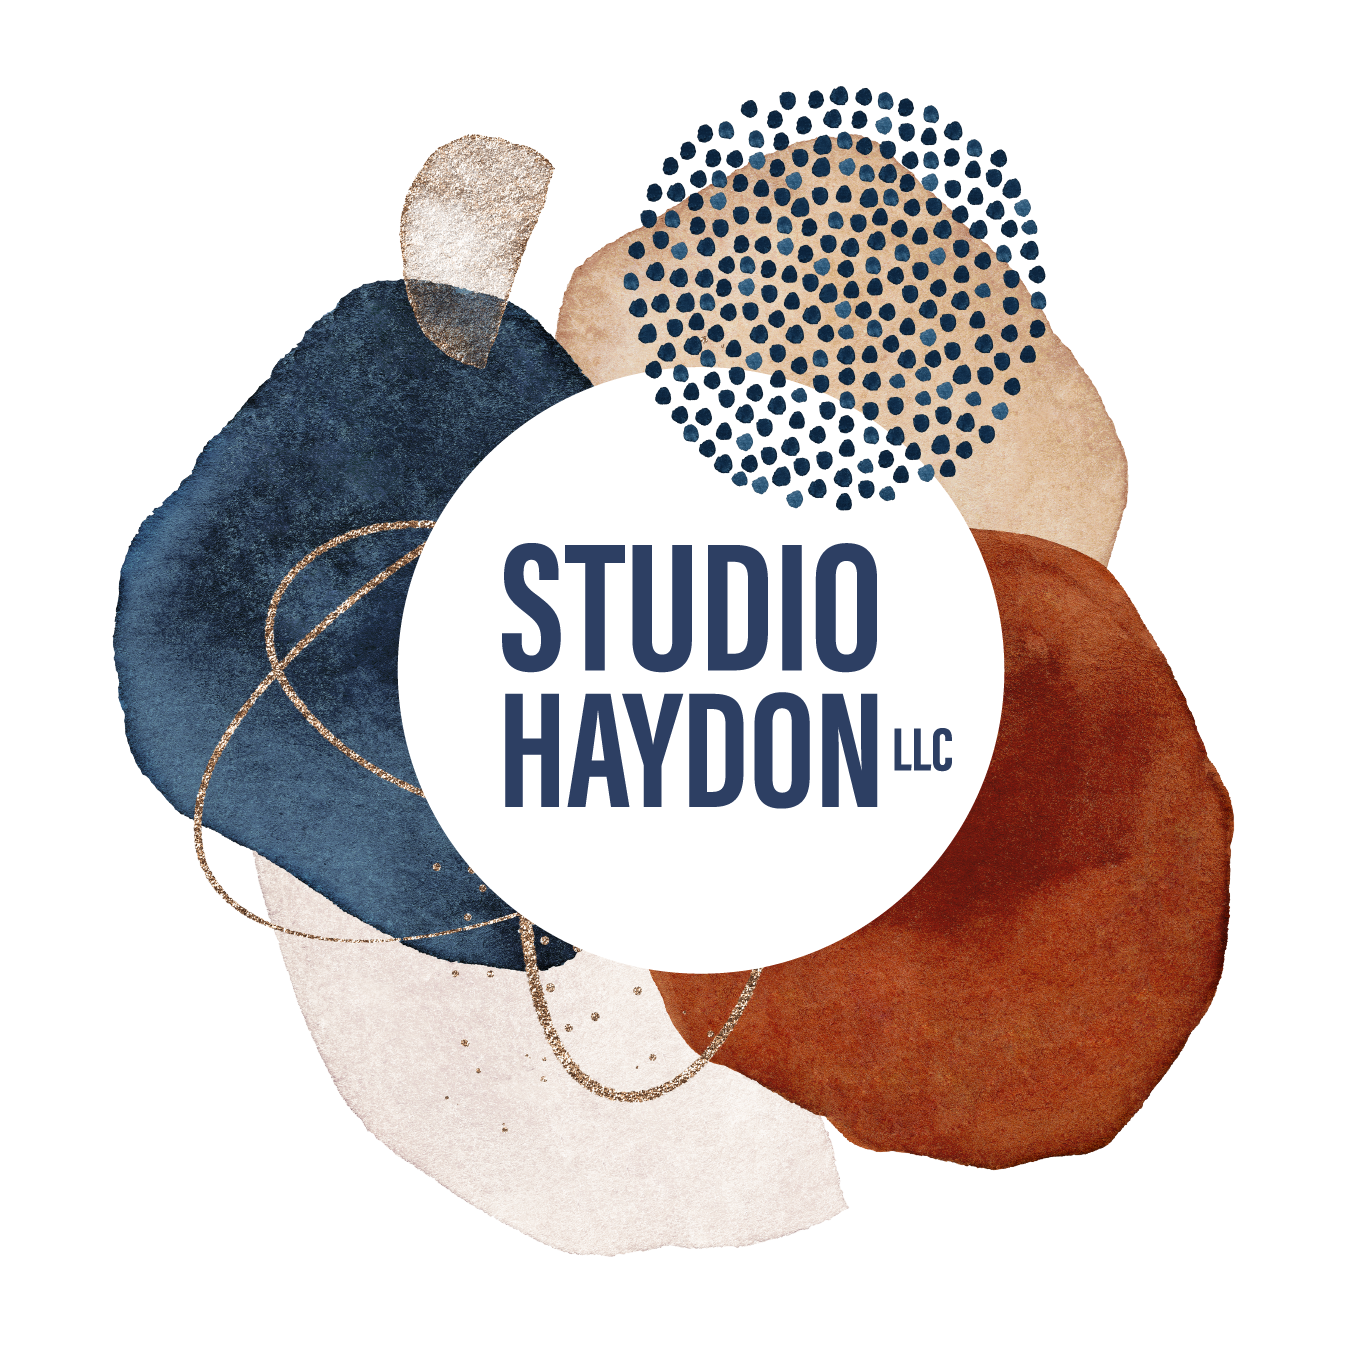 Studio Haydon LLC